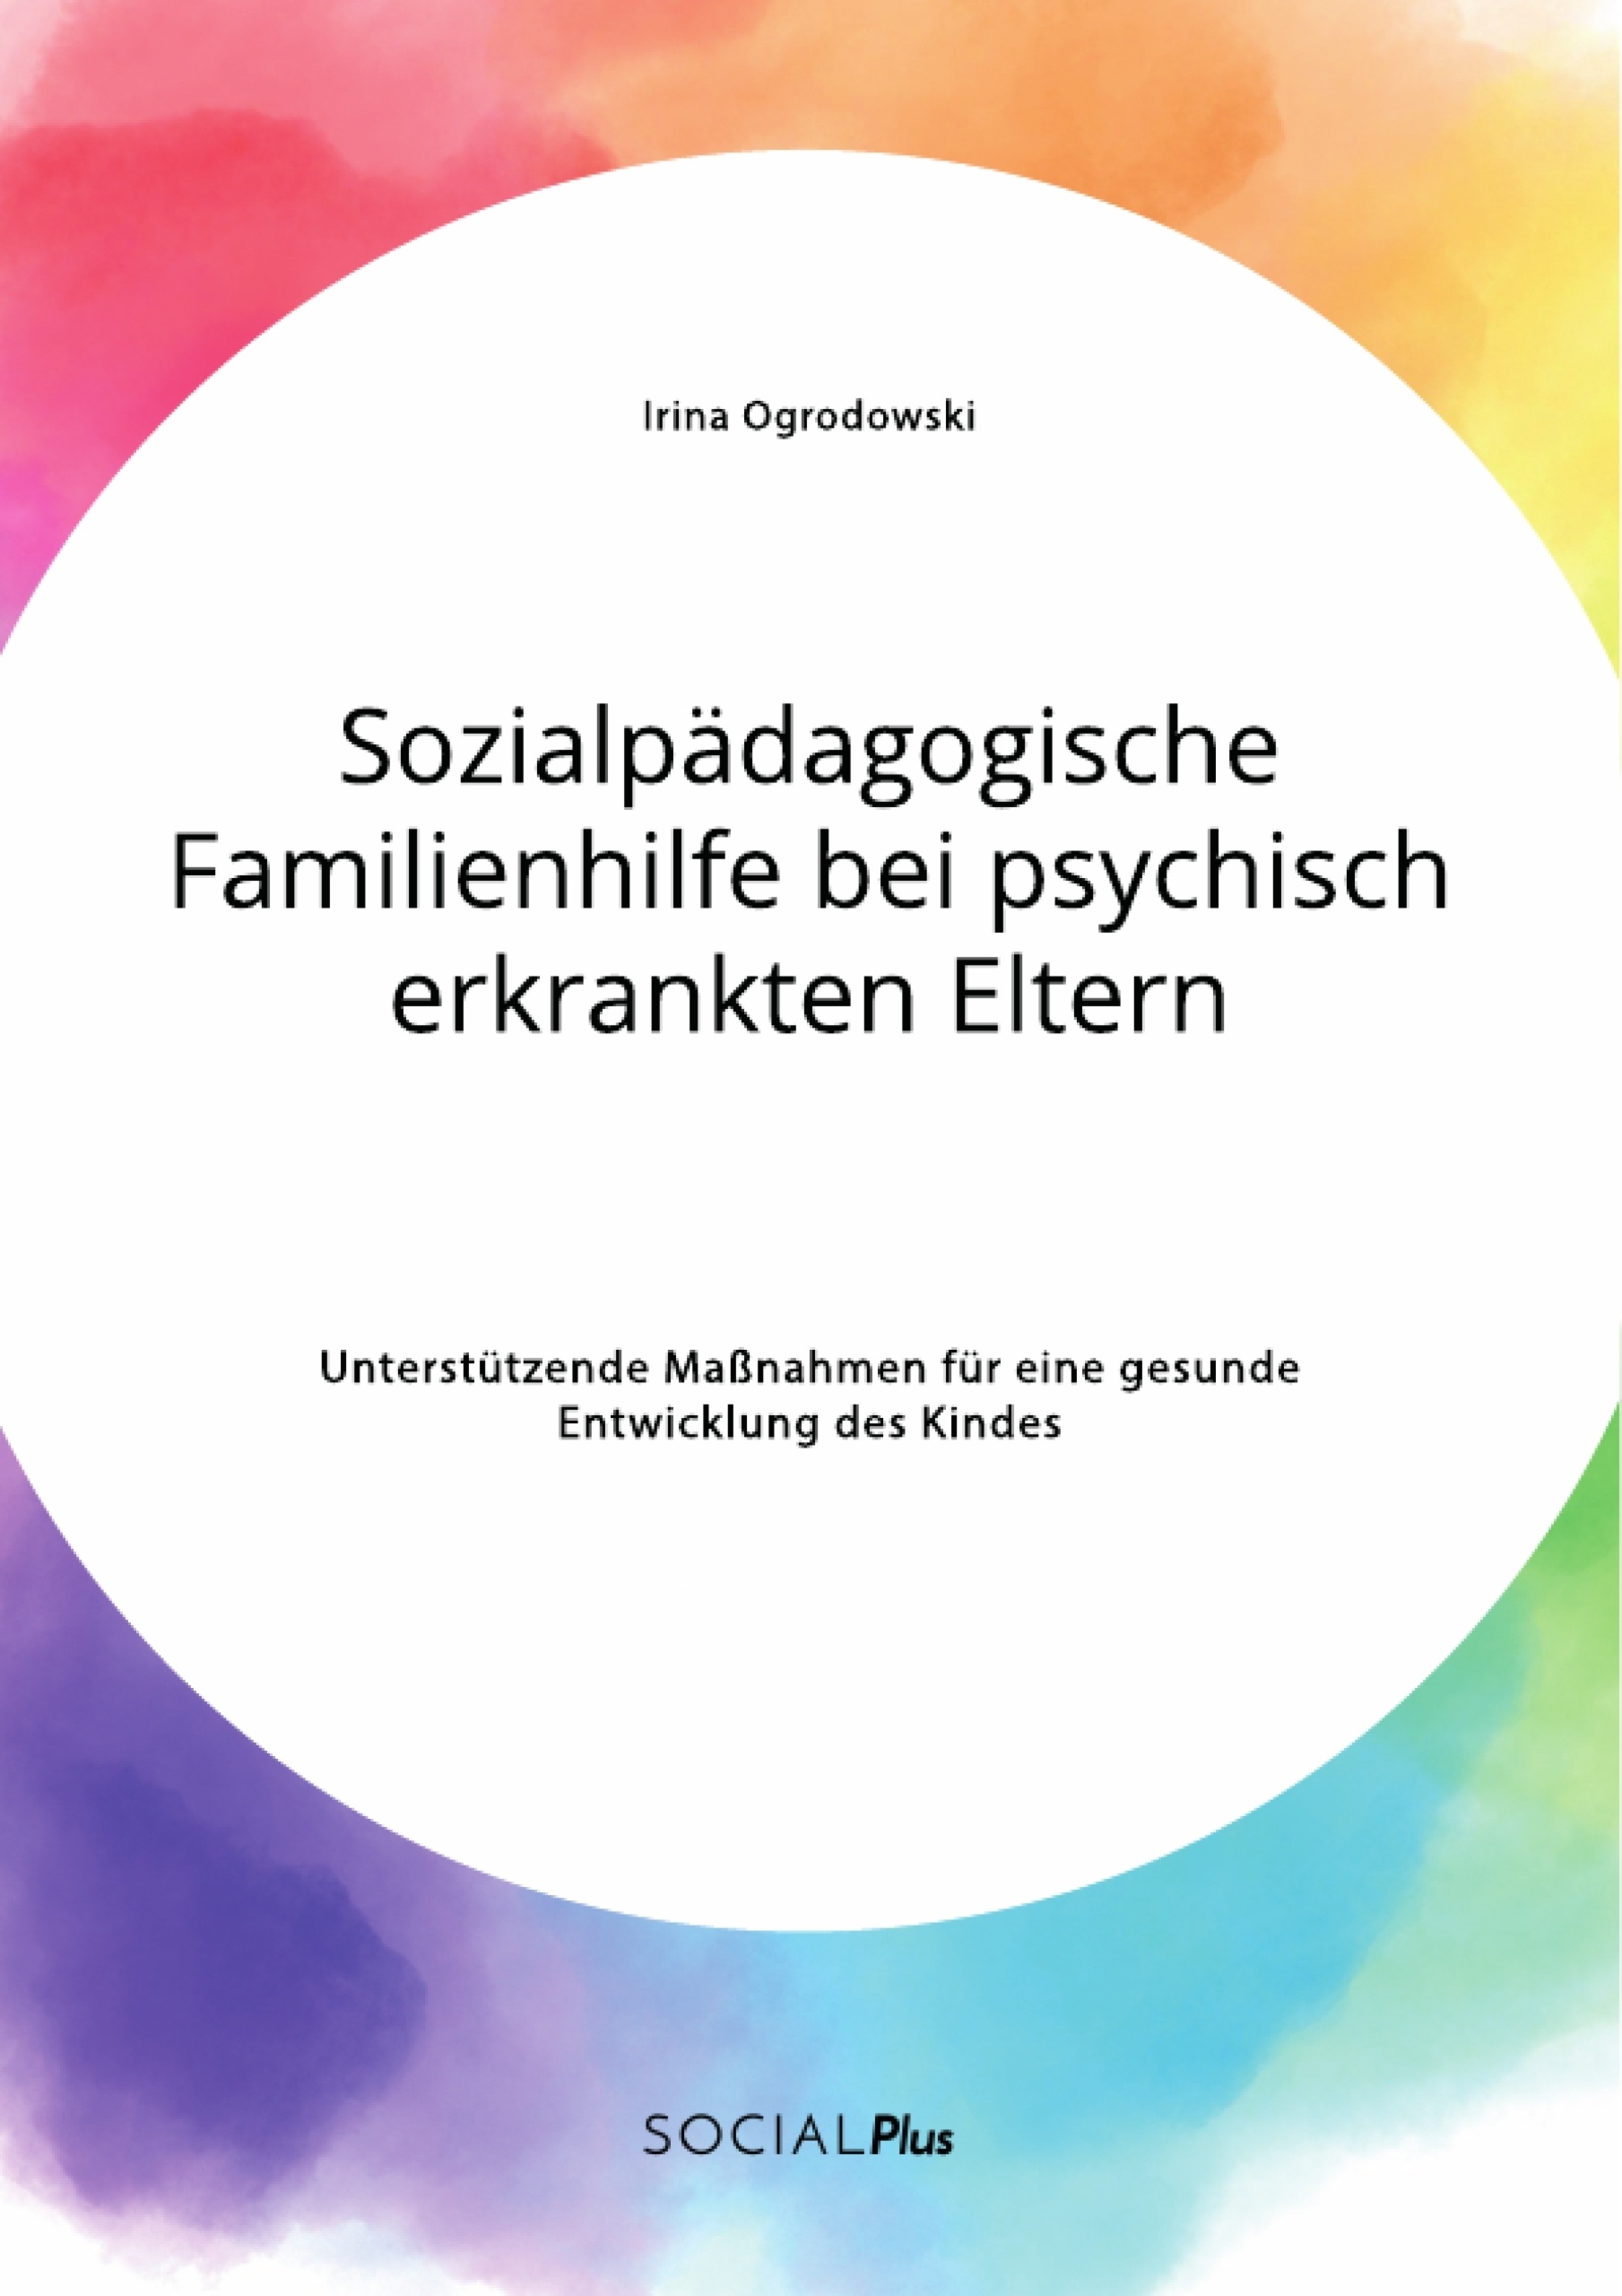 Titre: Sozialpädagogische Familienhilfe bei psychisch erkrankten Eltern. Unterstützende Maßnahmen für eine gesunde Entwicklung des Kindes